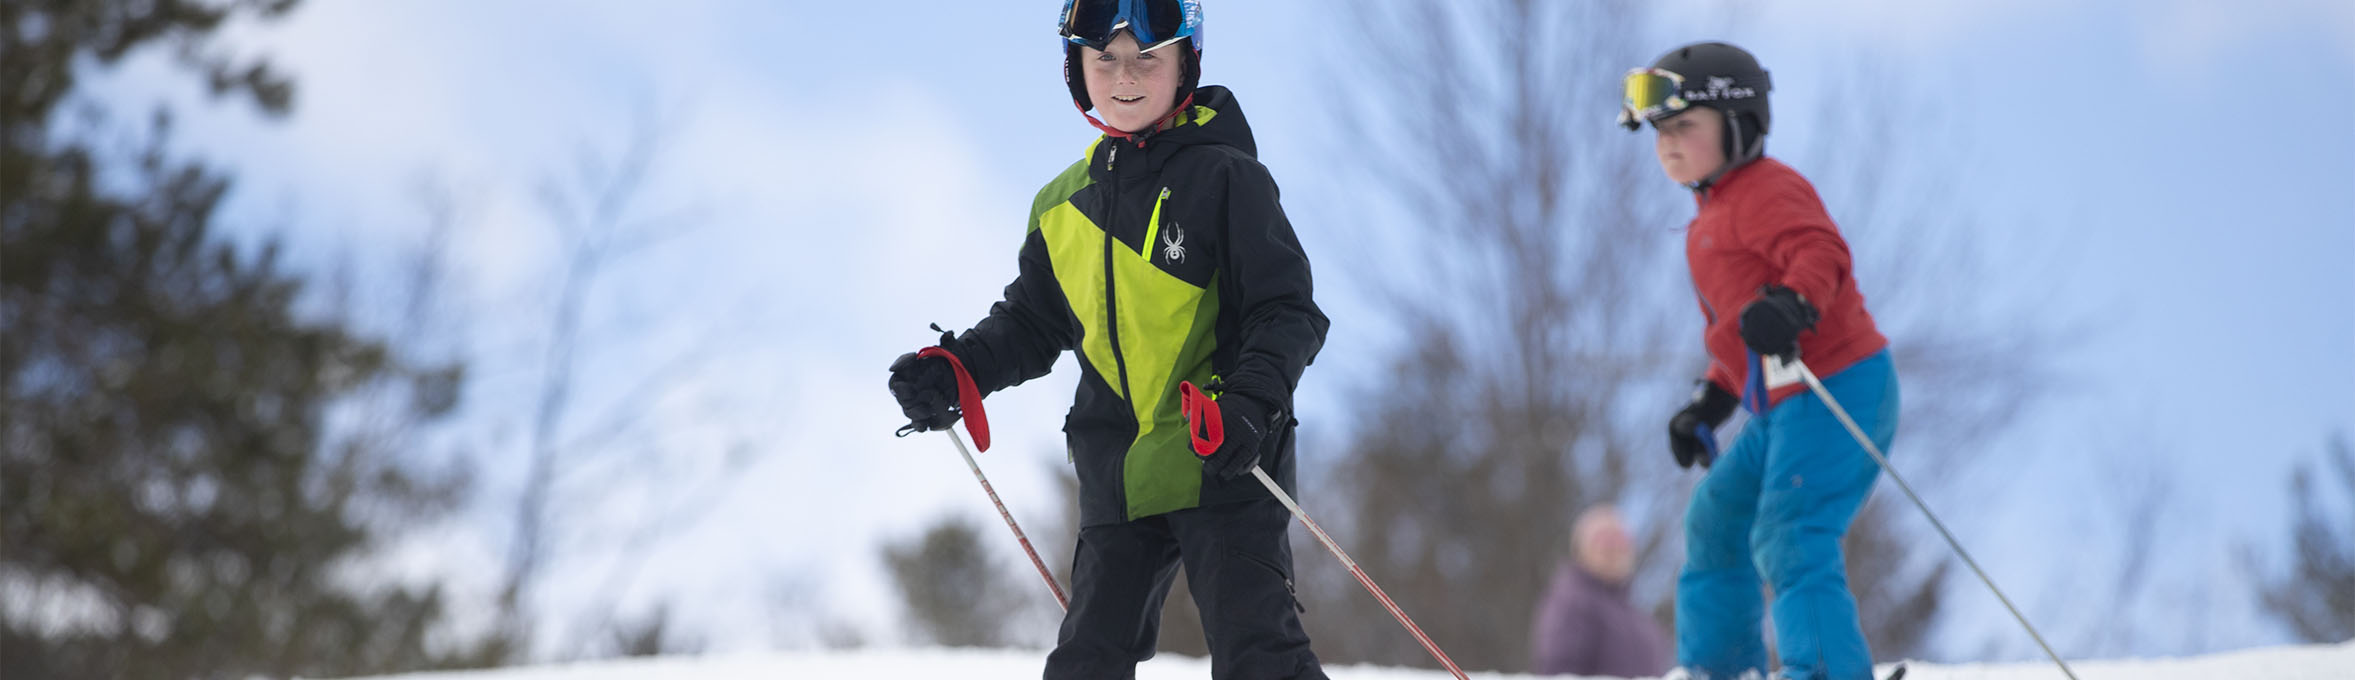 Pats Peak Kids Skiing